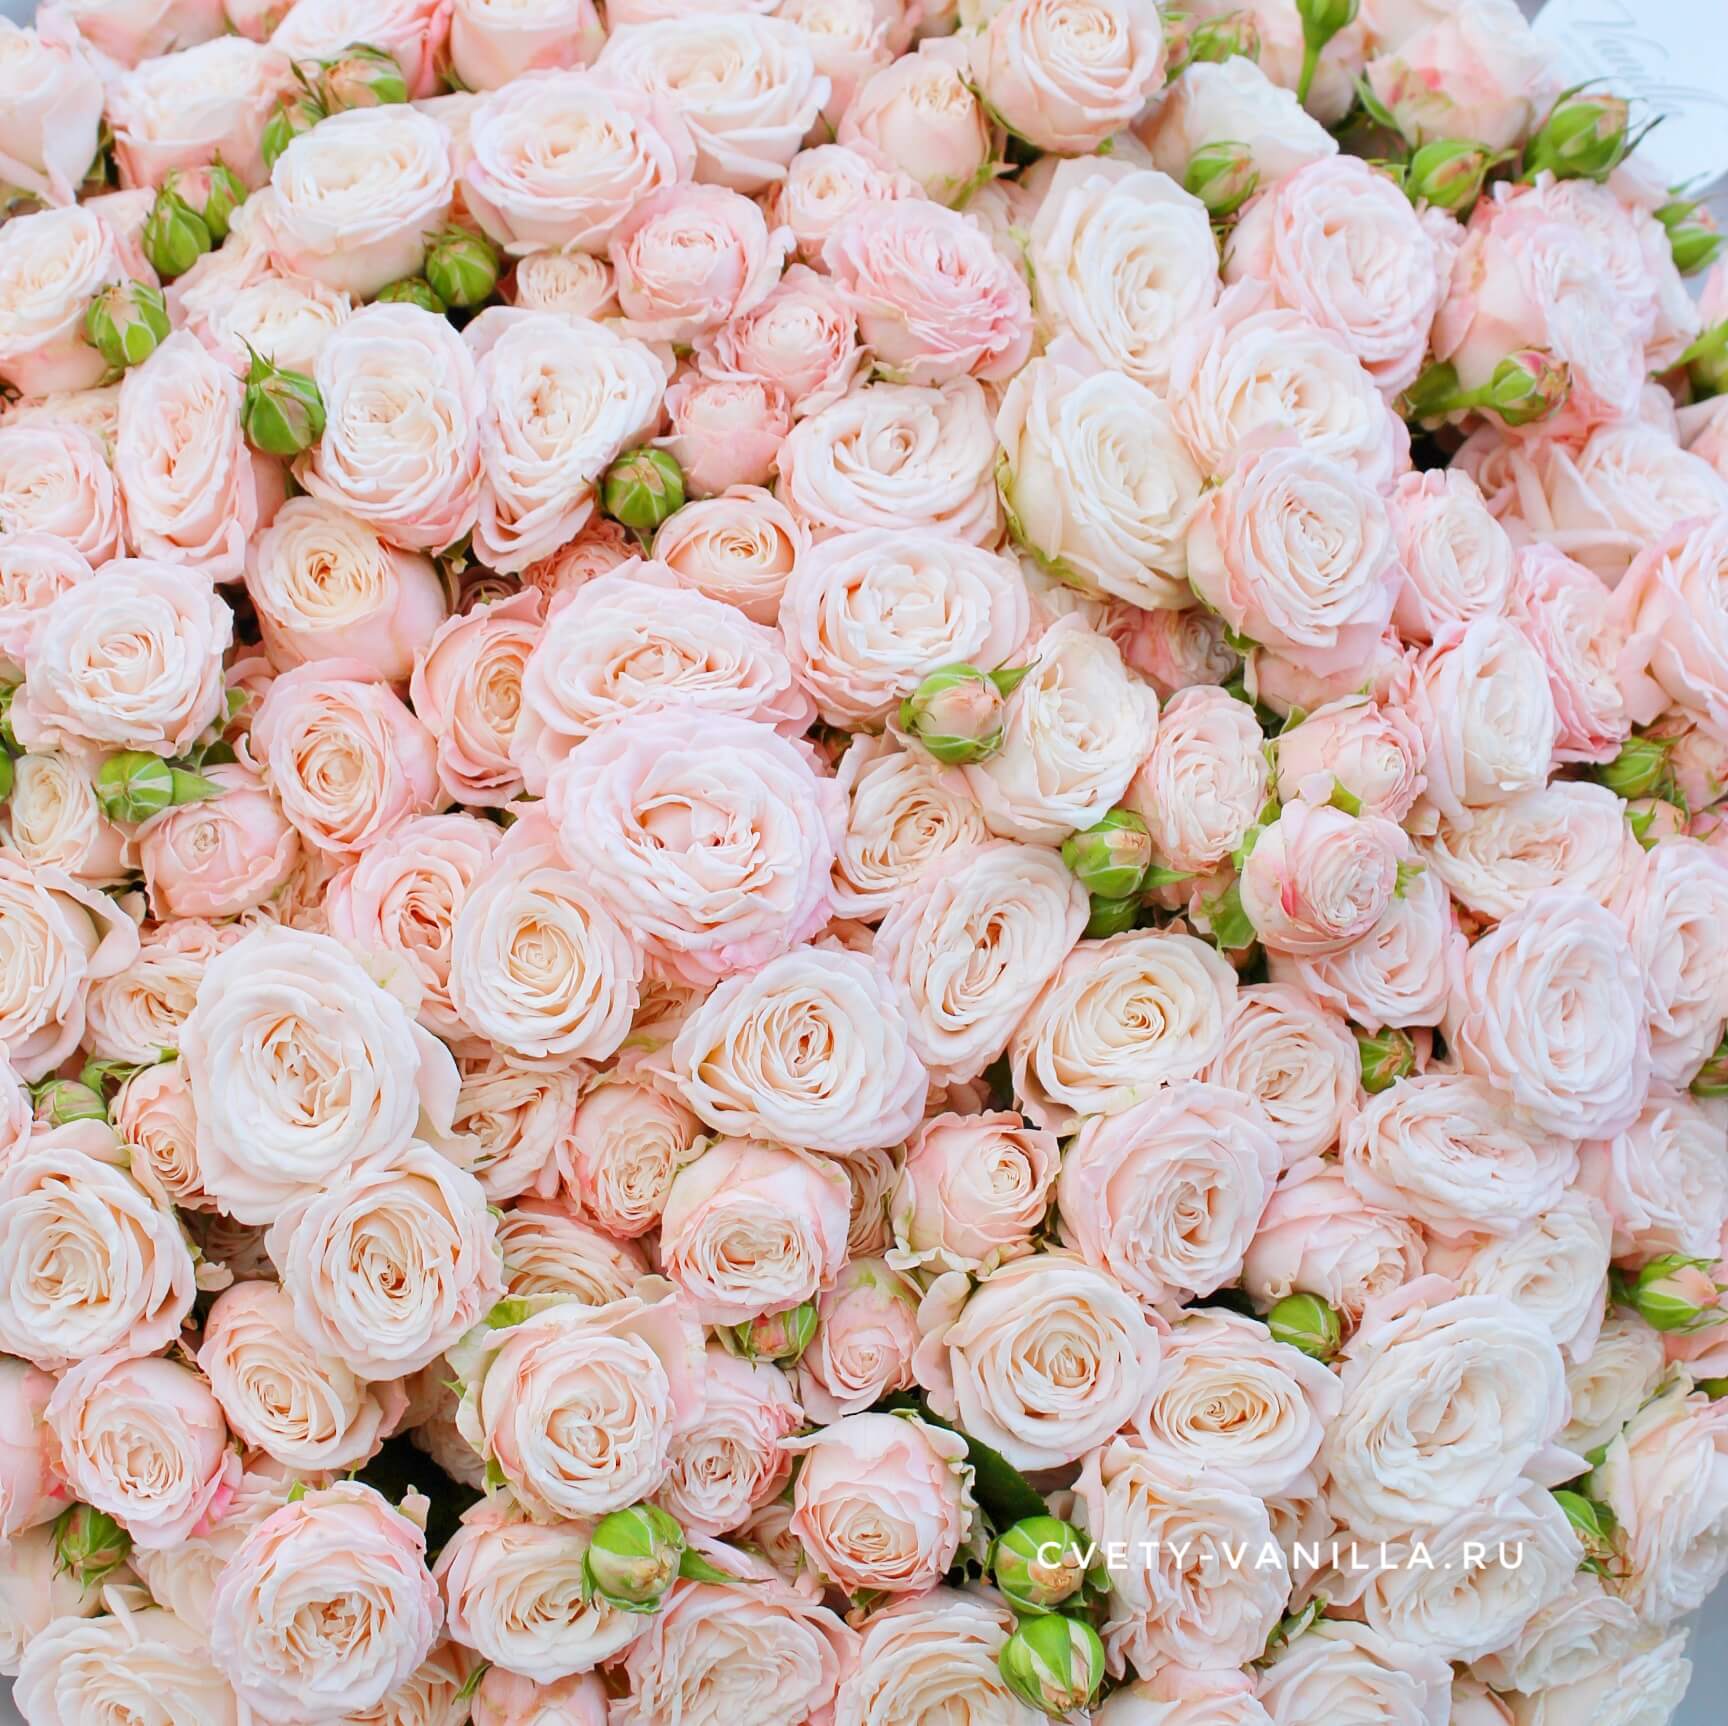 Открытки с днем рождения розовые розы - фото и картинки жк-вершина-сайт.рф